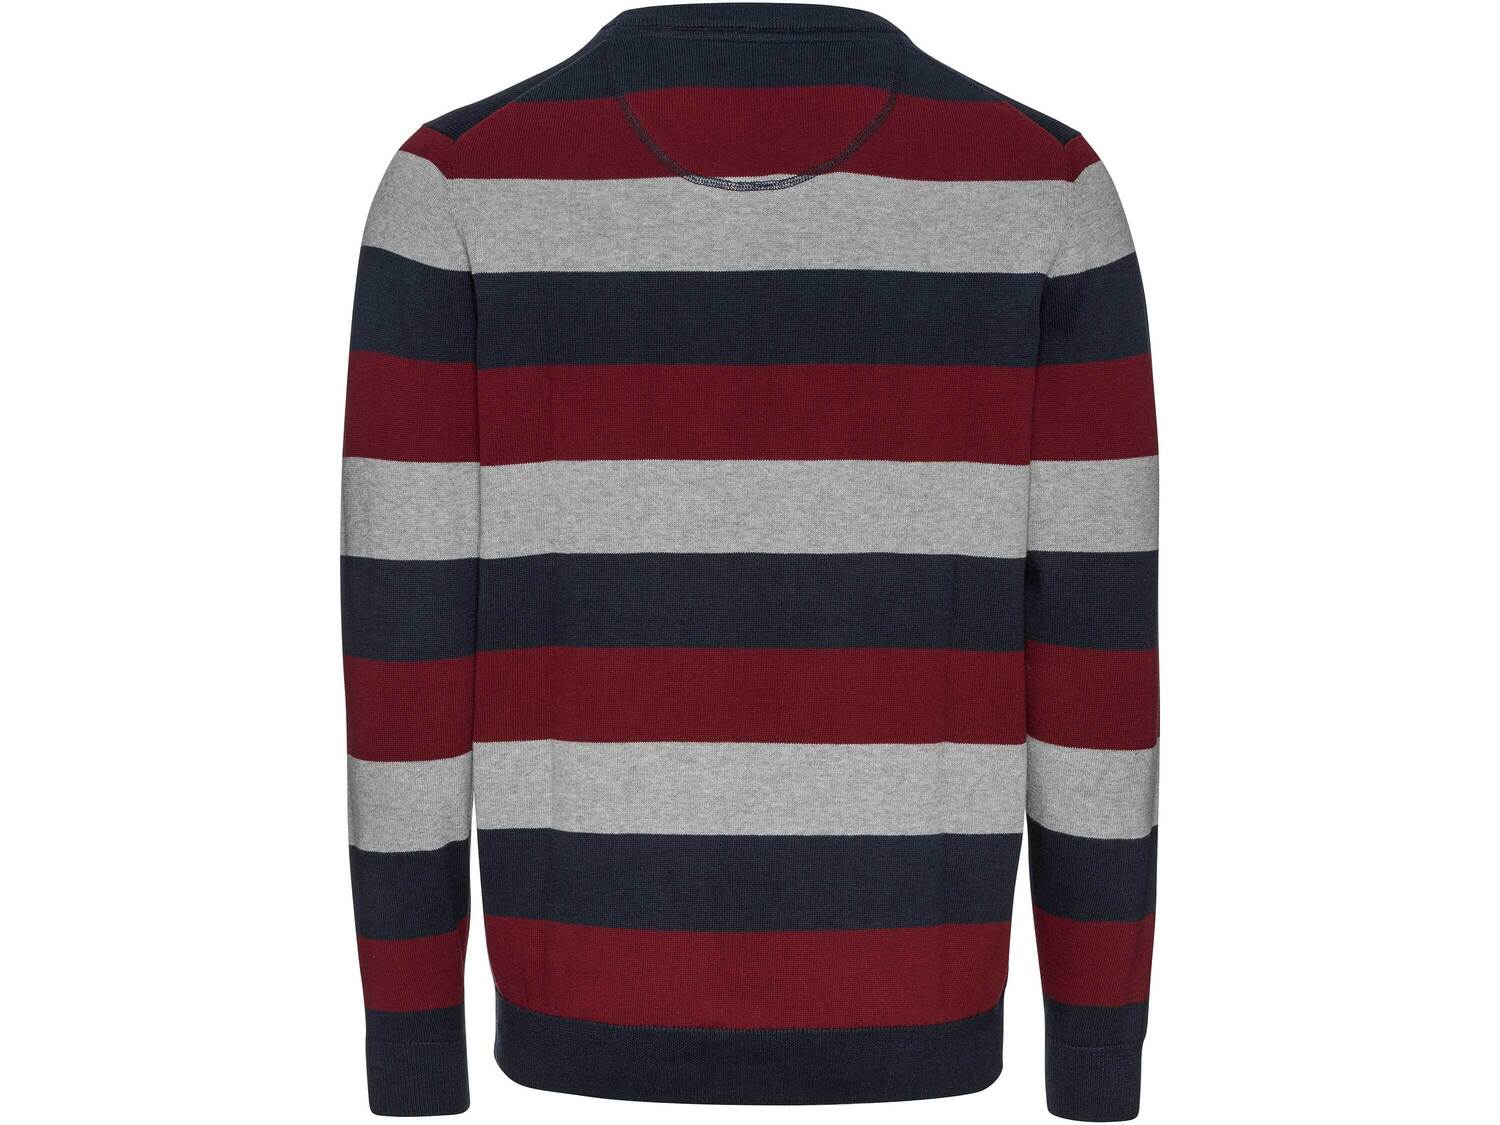 Sweter z bawełny Livergy, cena 34,99 PLN 
- rozmiary: M-XXL
- 100% bawełny
Opis

- ...